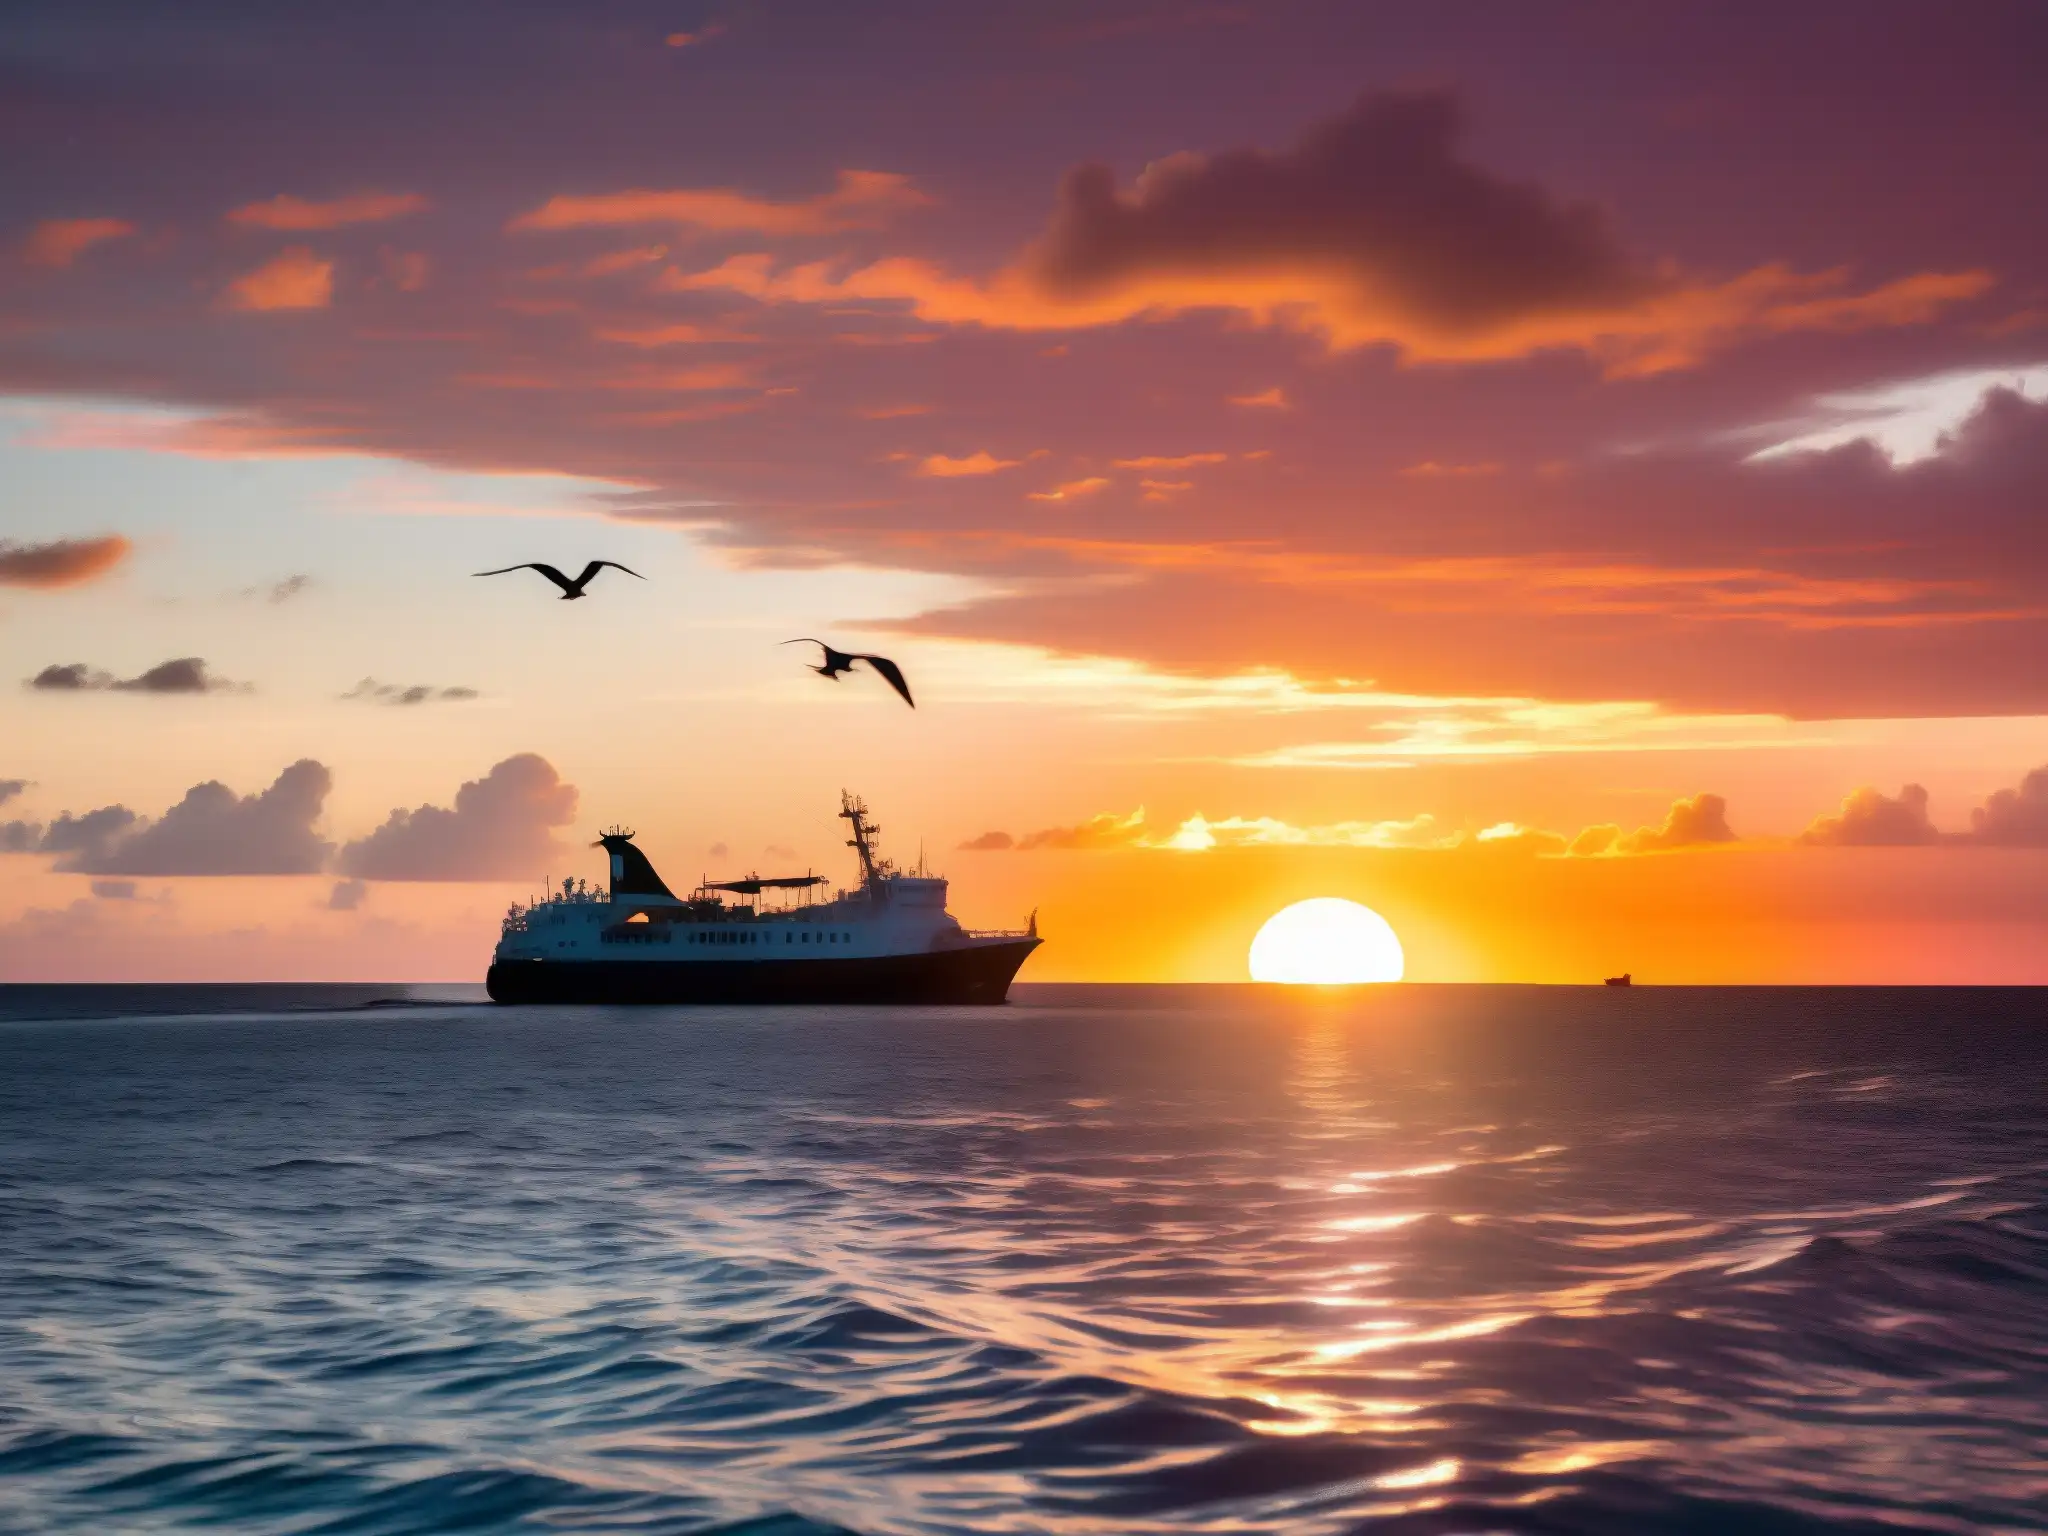 Una puesta de sol mística sobre las aguas del Triángulo de las Bermudas, con un barco distante y gaviotas en vuelo